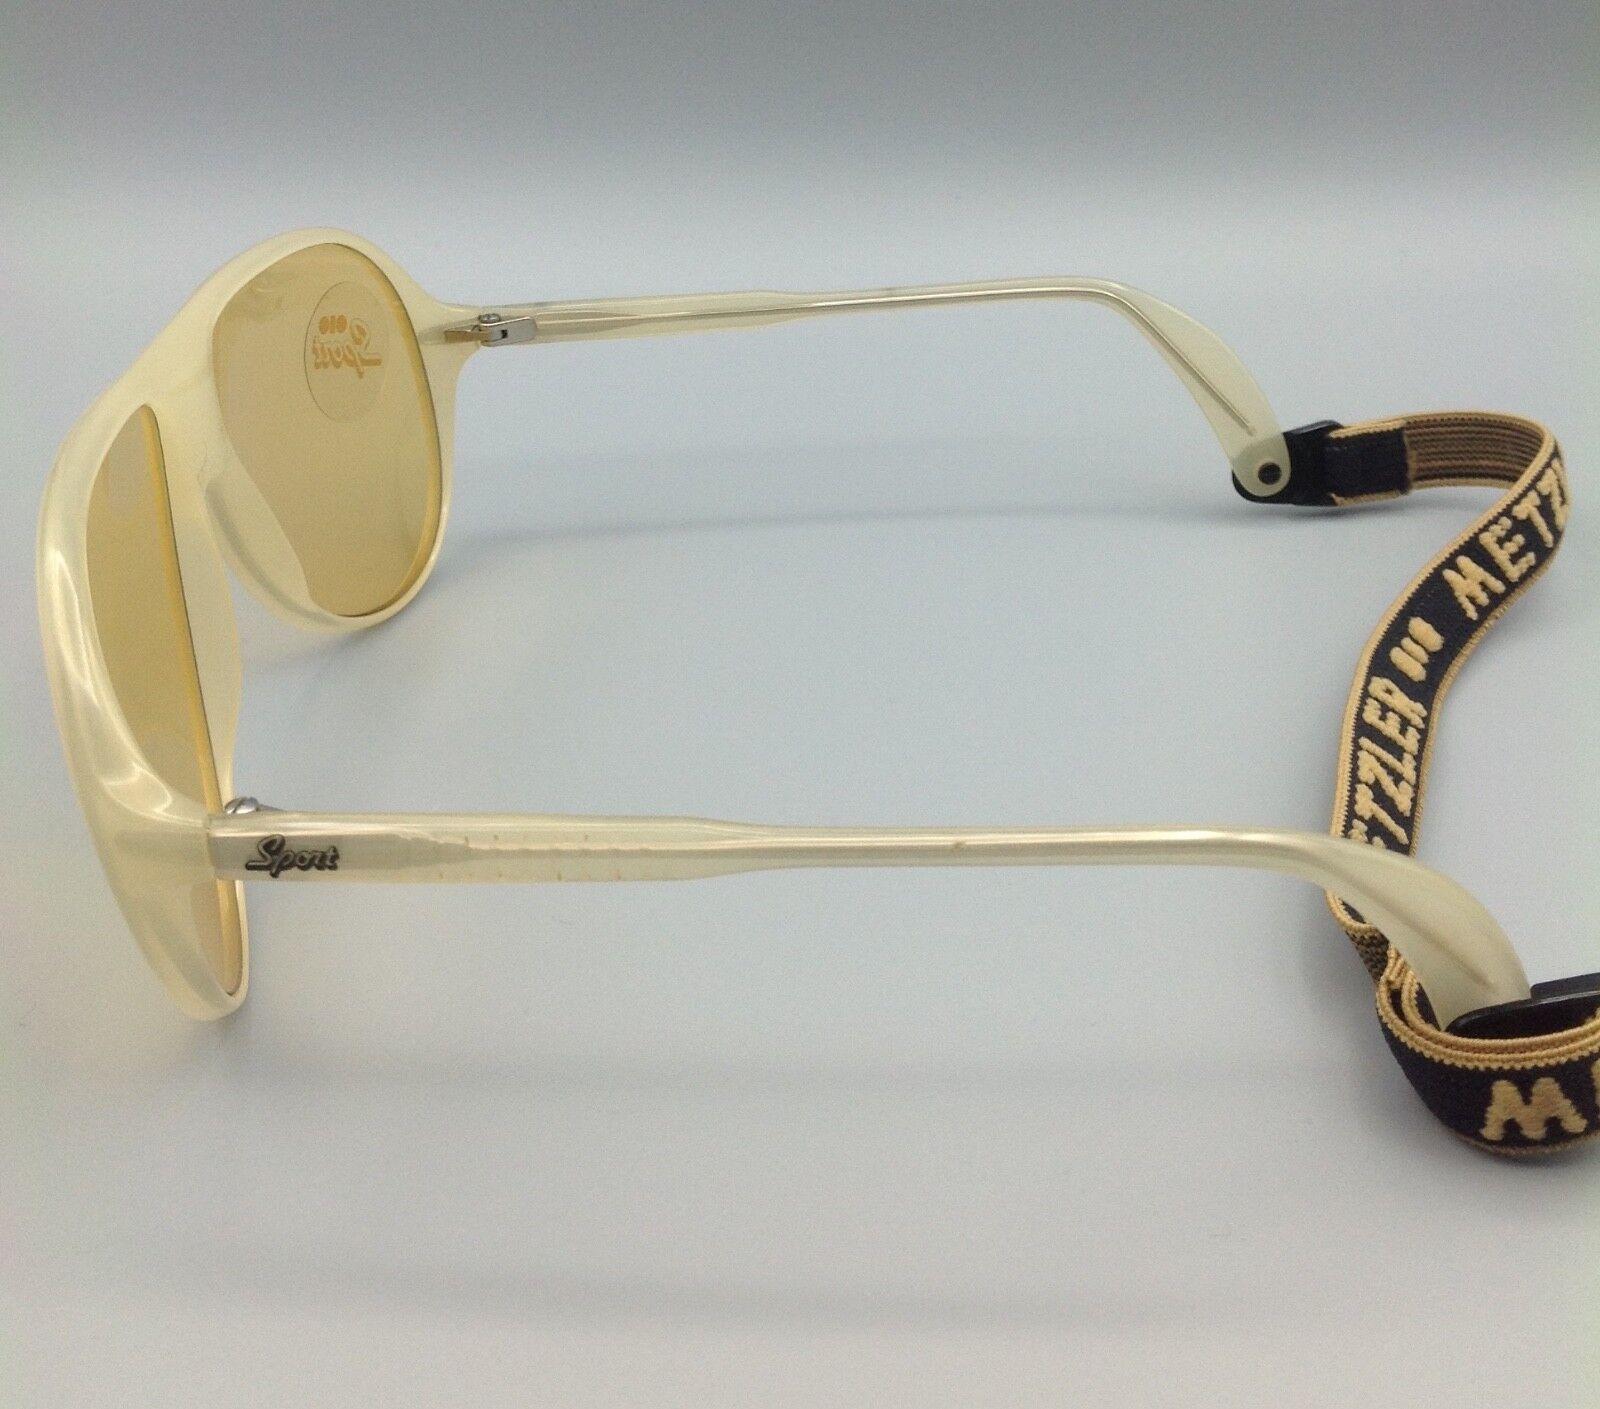 Metzler occhiale sole vintage modello 0103 sport sunglasses sport lunettes sonnenbrillen